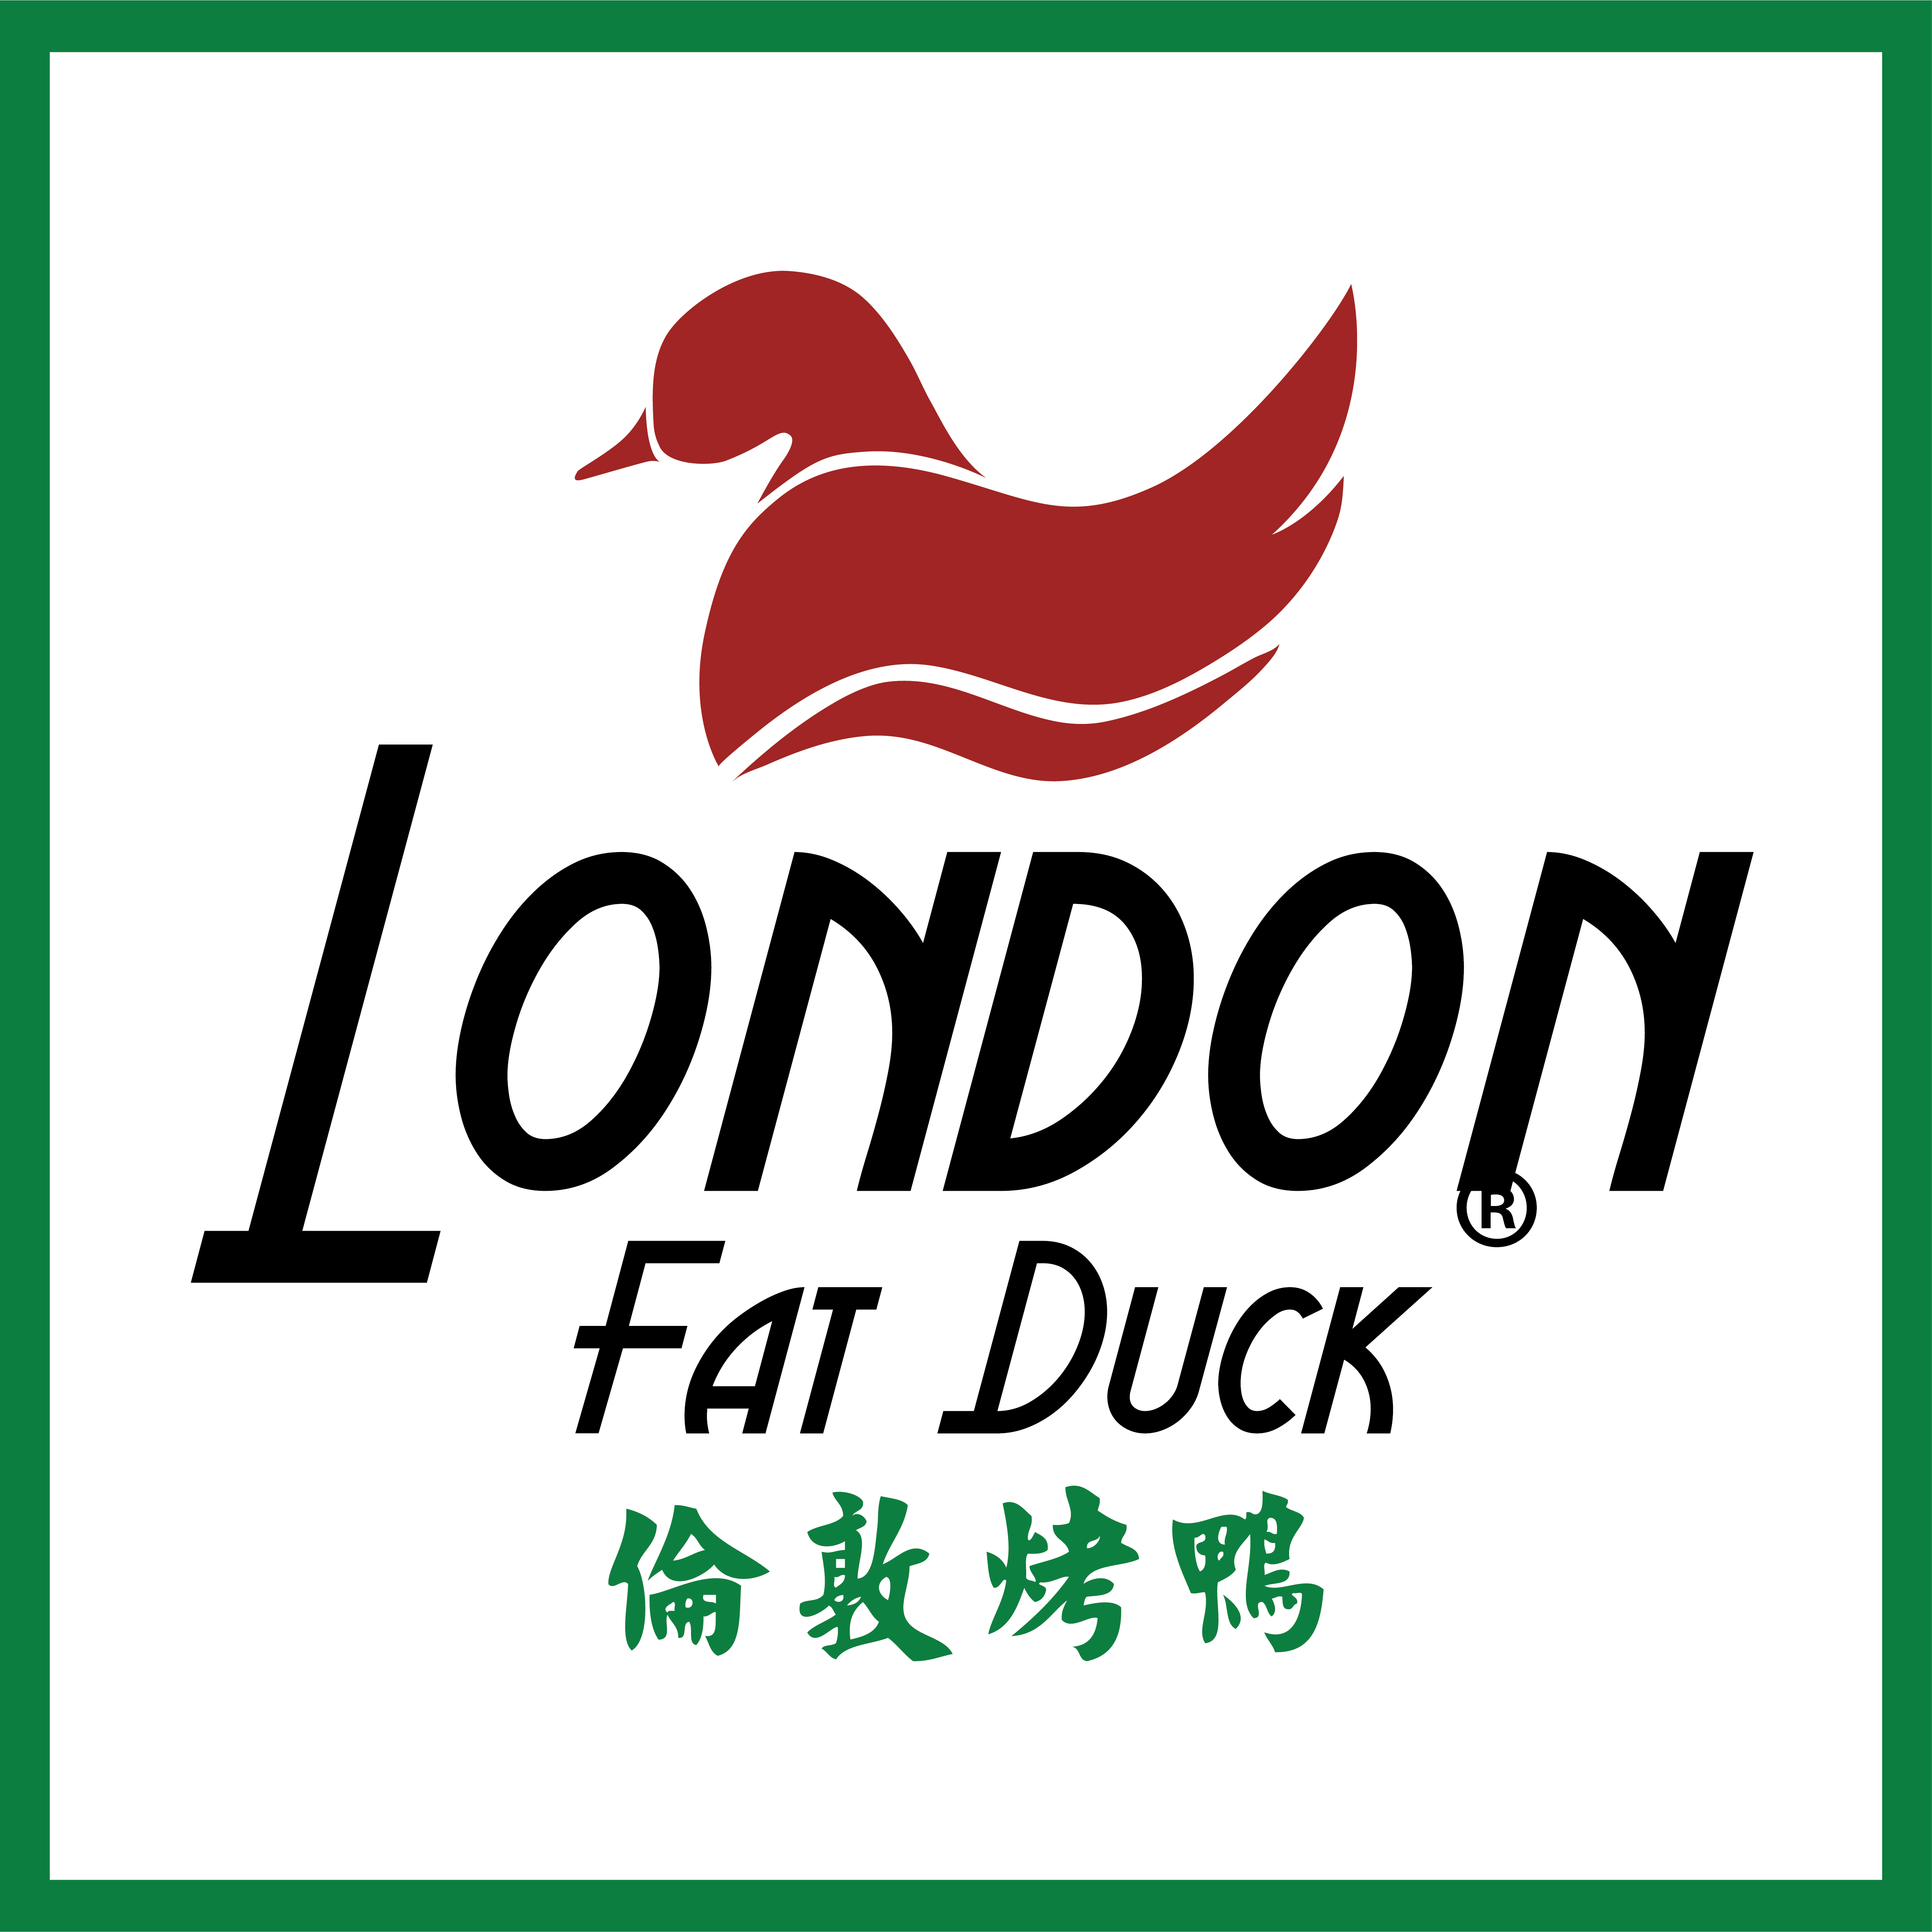 London Fat Duck.jpg